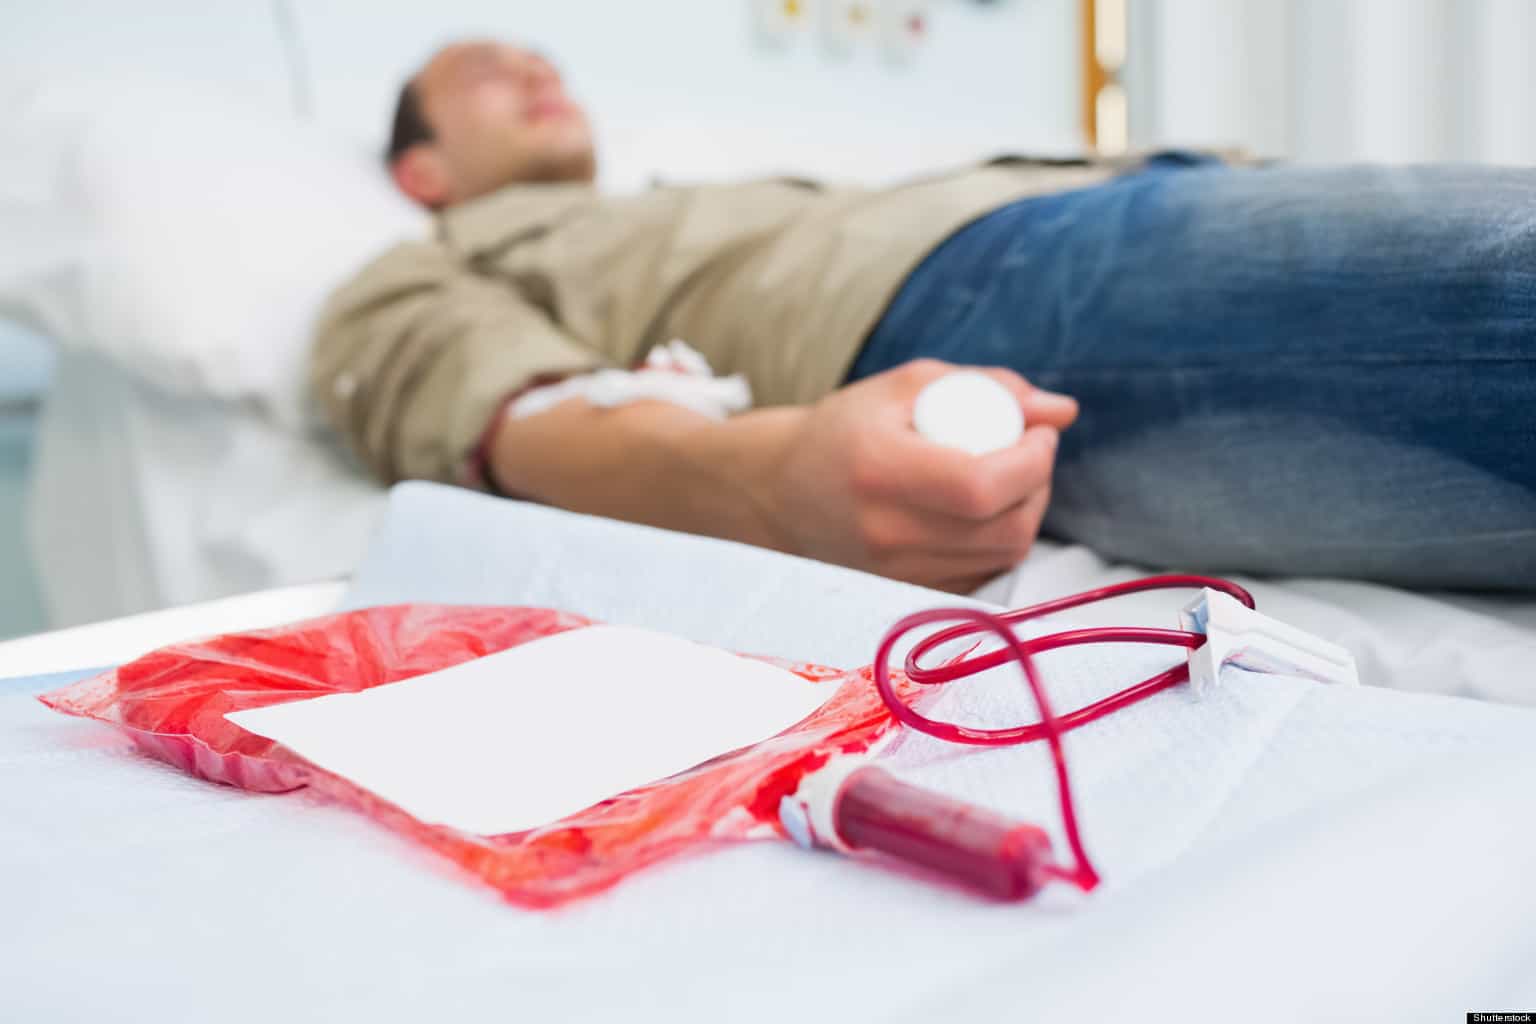 Personer som har tjockt blod rekommenderas inte att donera blod, detta är anledningen